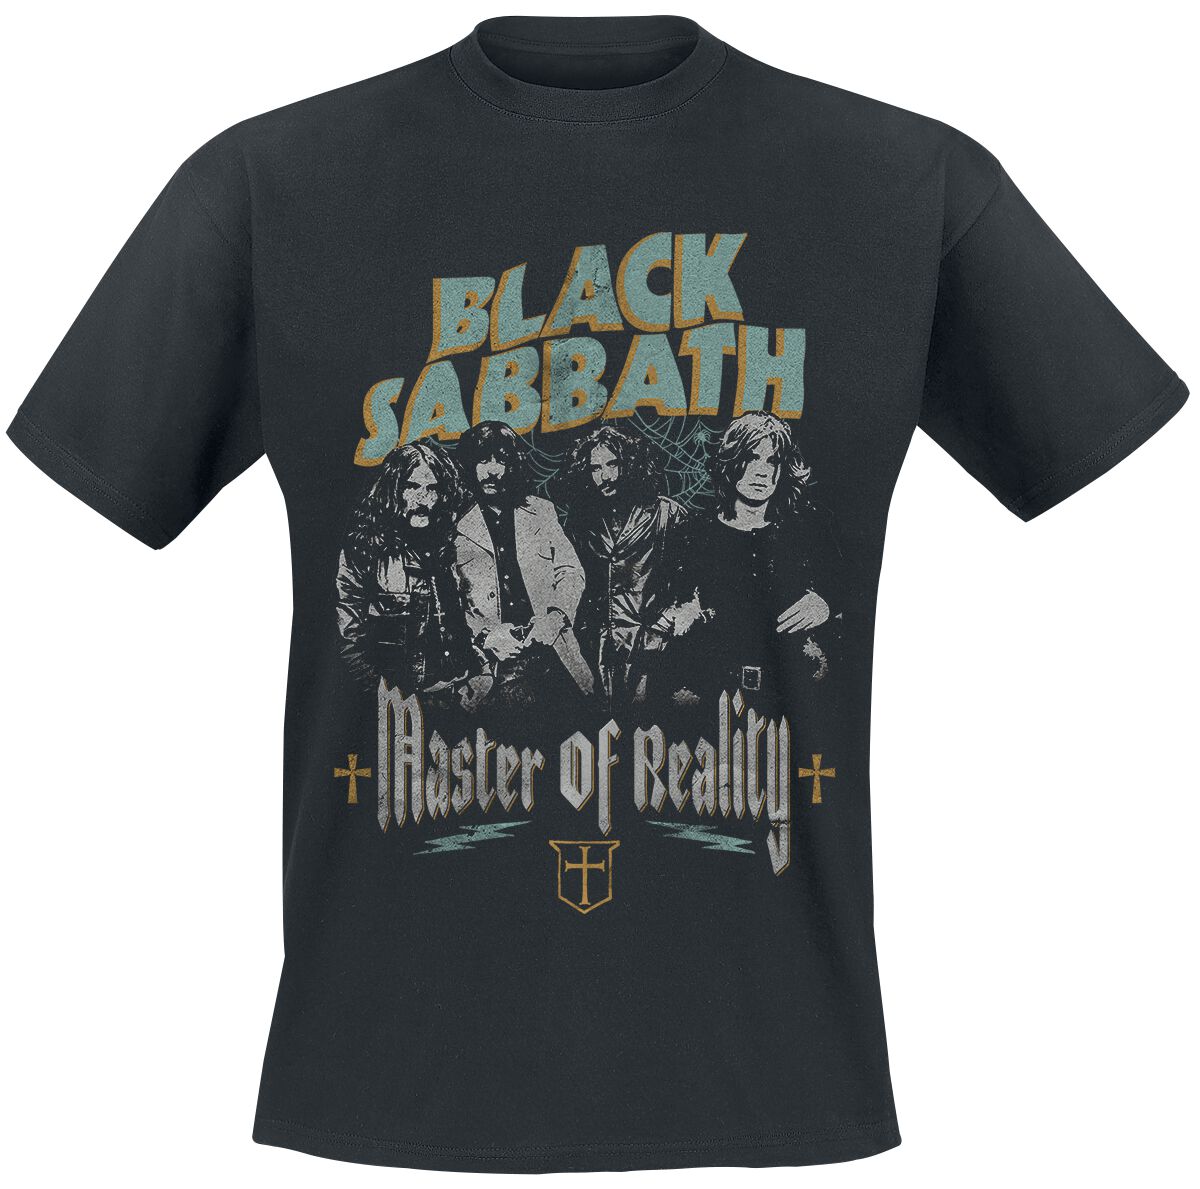 Black Sabbath T-Shirt - Master of reality - S bis 3XL - für Männer - Größe S - schwarz  - Lizenziertes Merchandise!